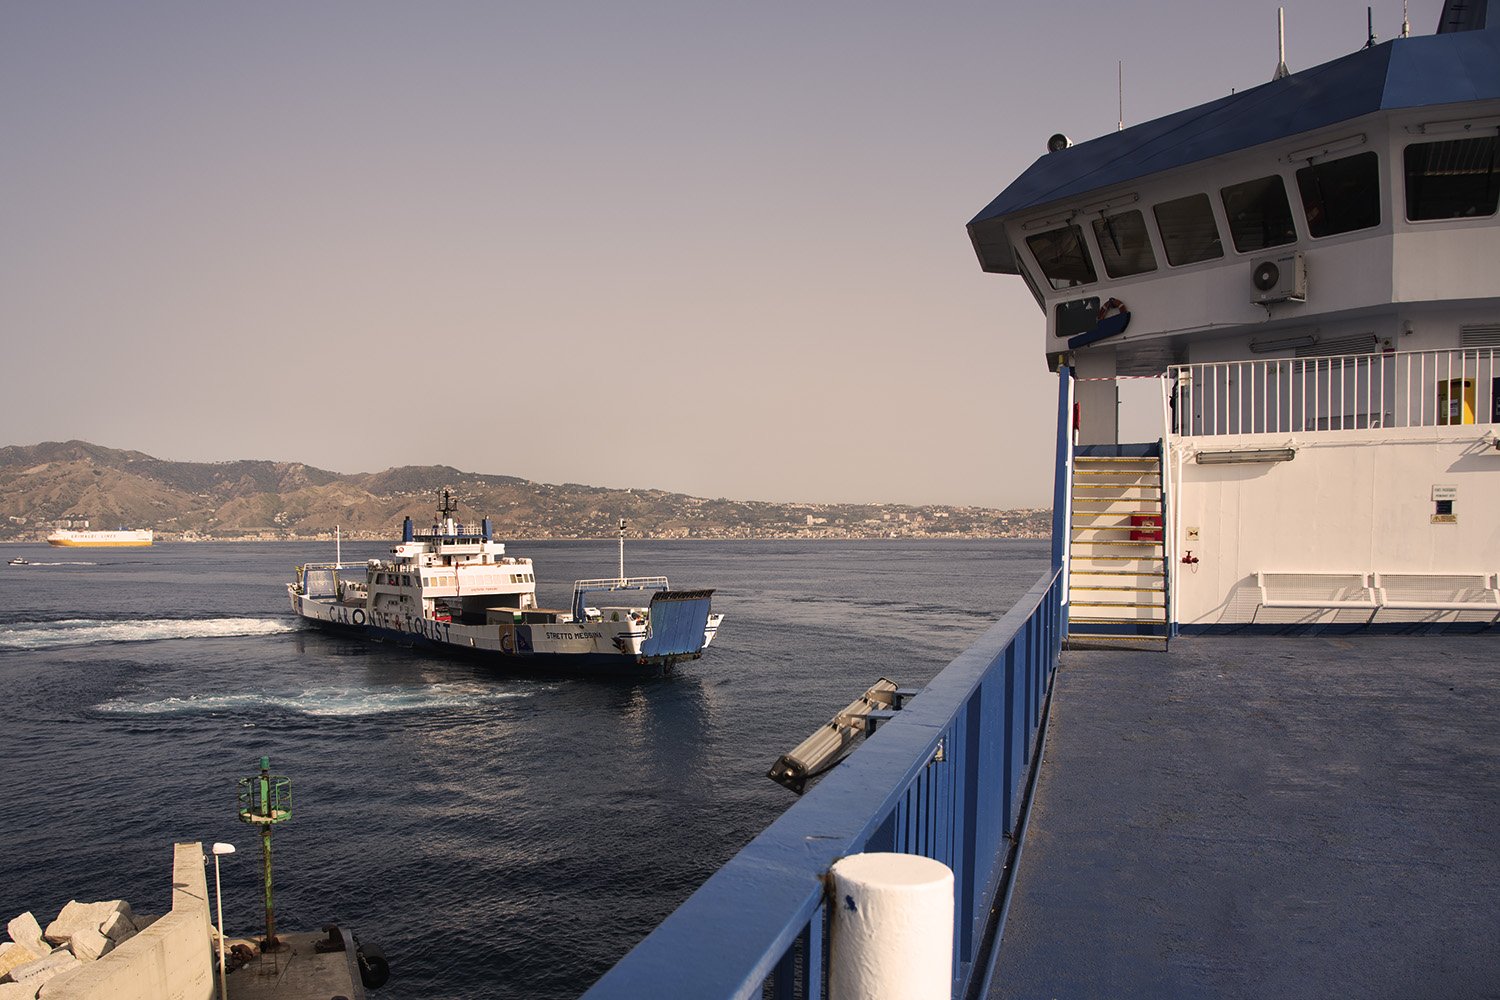  Navigazione delle caronti, traghetti di trasporto pubblico attivi sullo stretto, Porto di Villa San Giovanni (Reggio Calabria), 2023. 